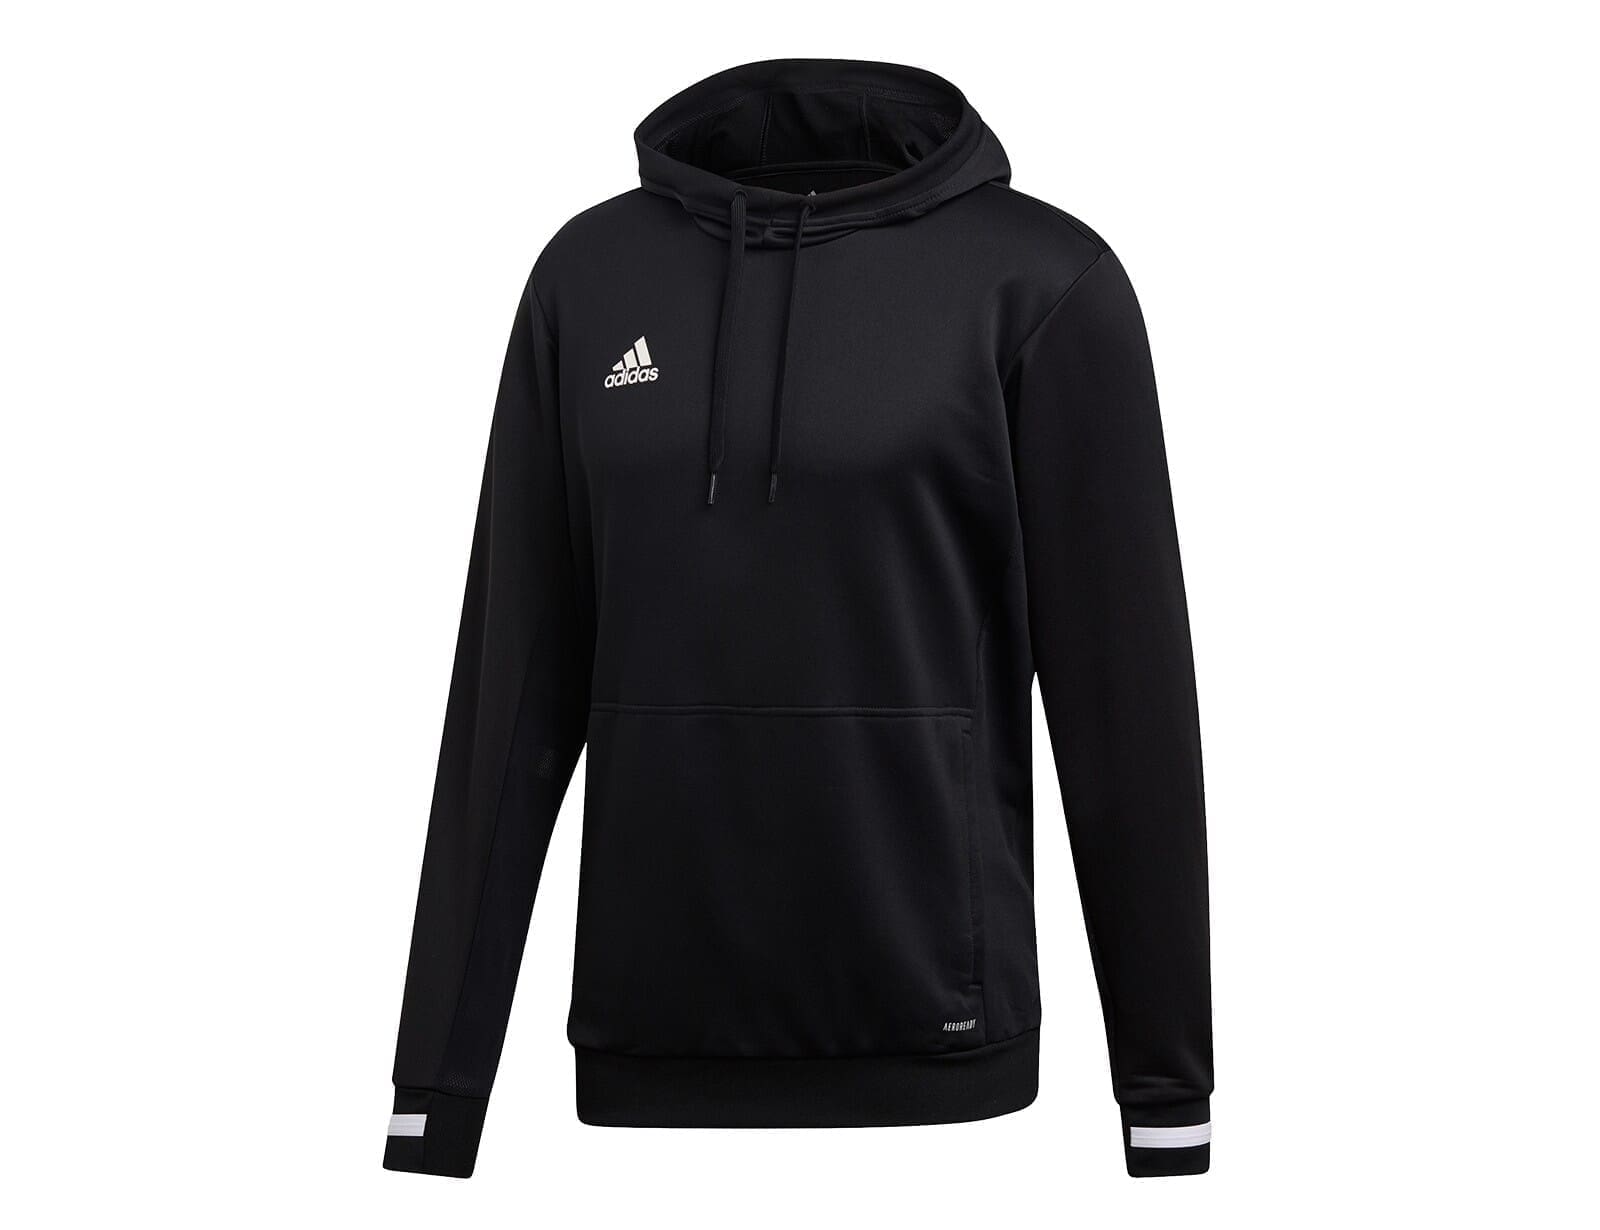 adidas - T19 Hoody - Sport hoodie